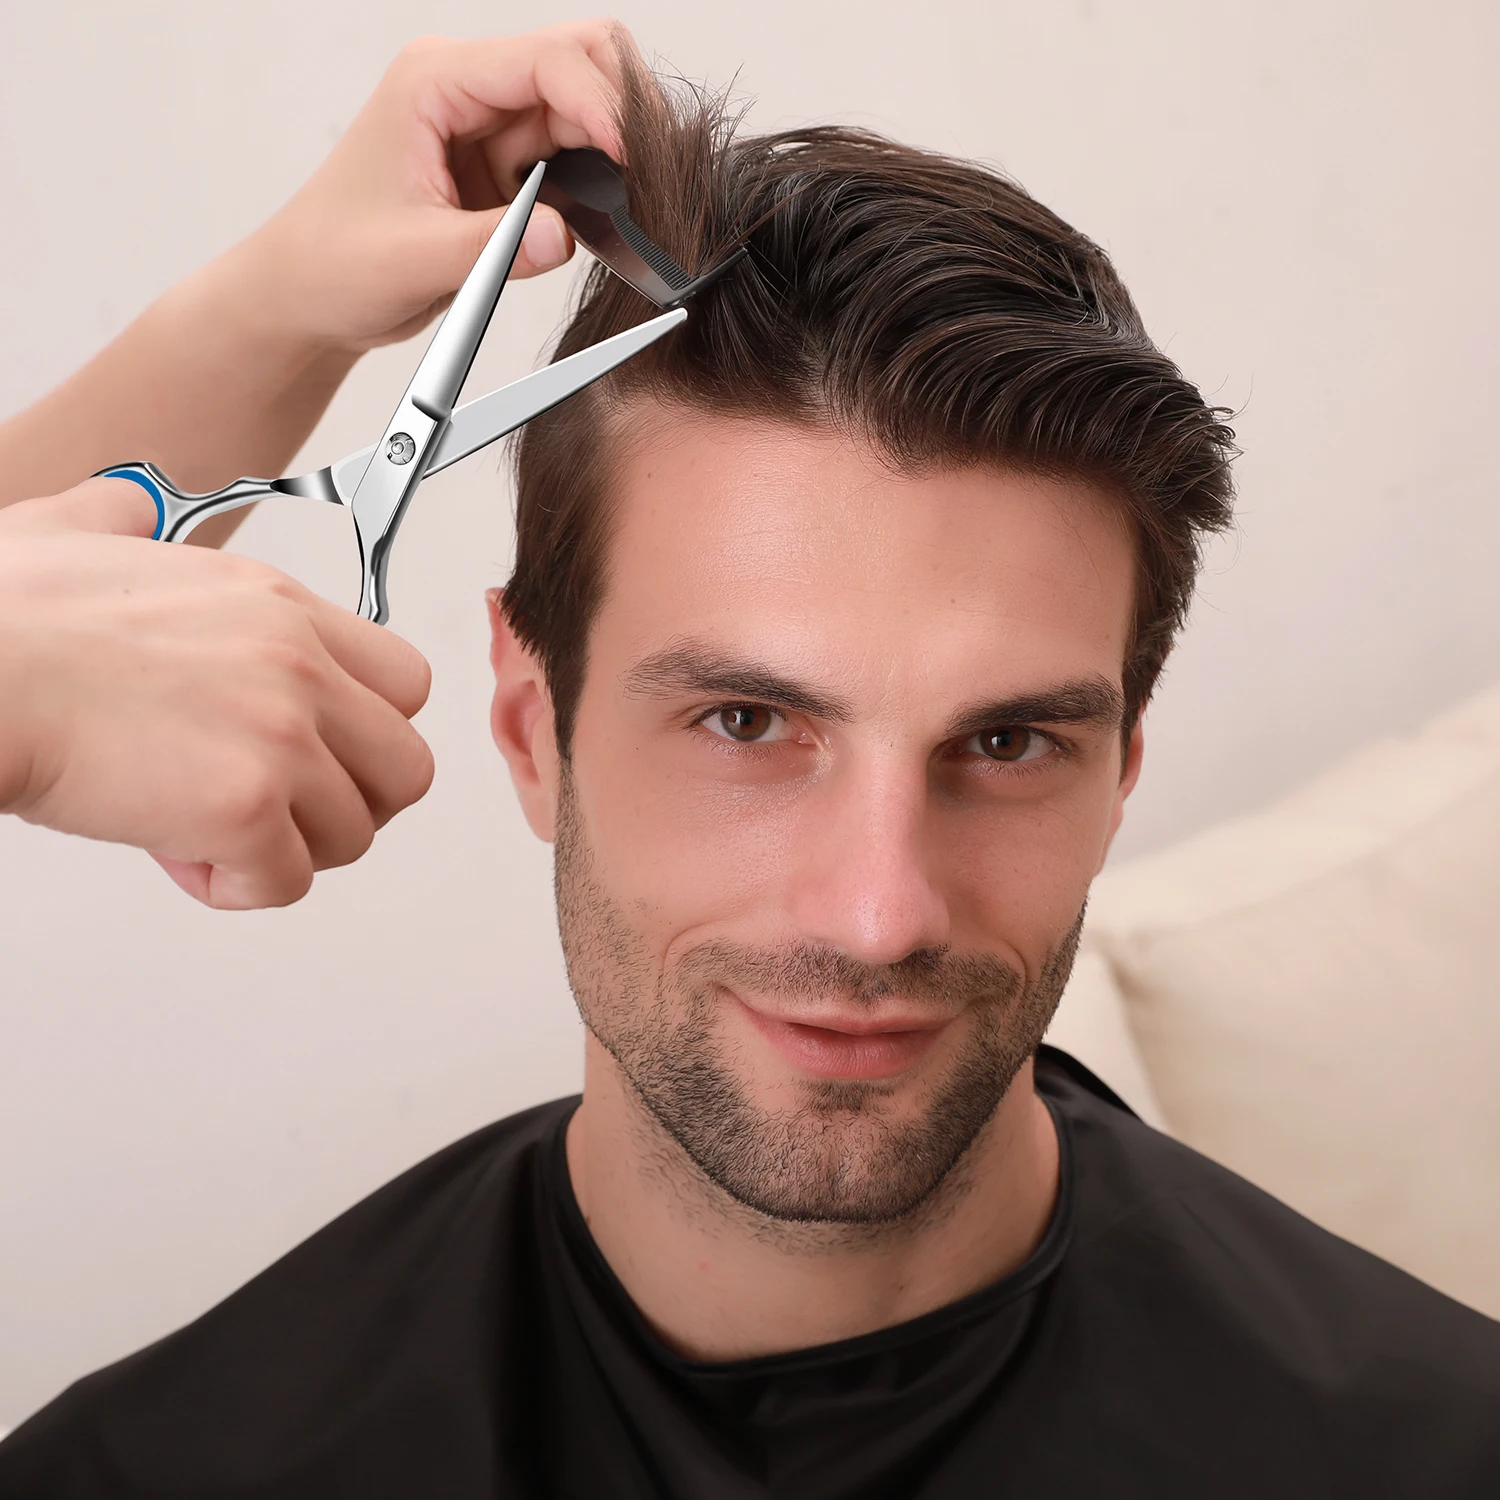 Ножницы для филировки волос ножницы для стрижки волос парикмахерские инструменты ножницы для волос Парикмахерские ножницы Профессиональн...